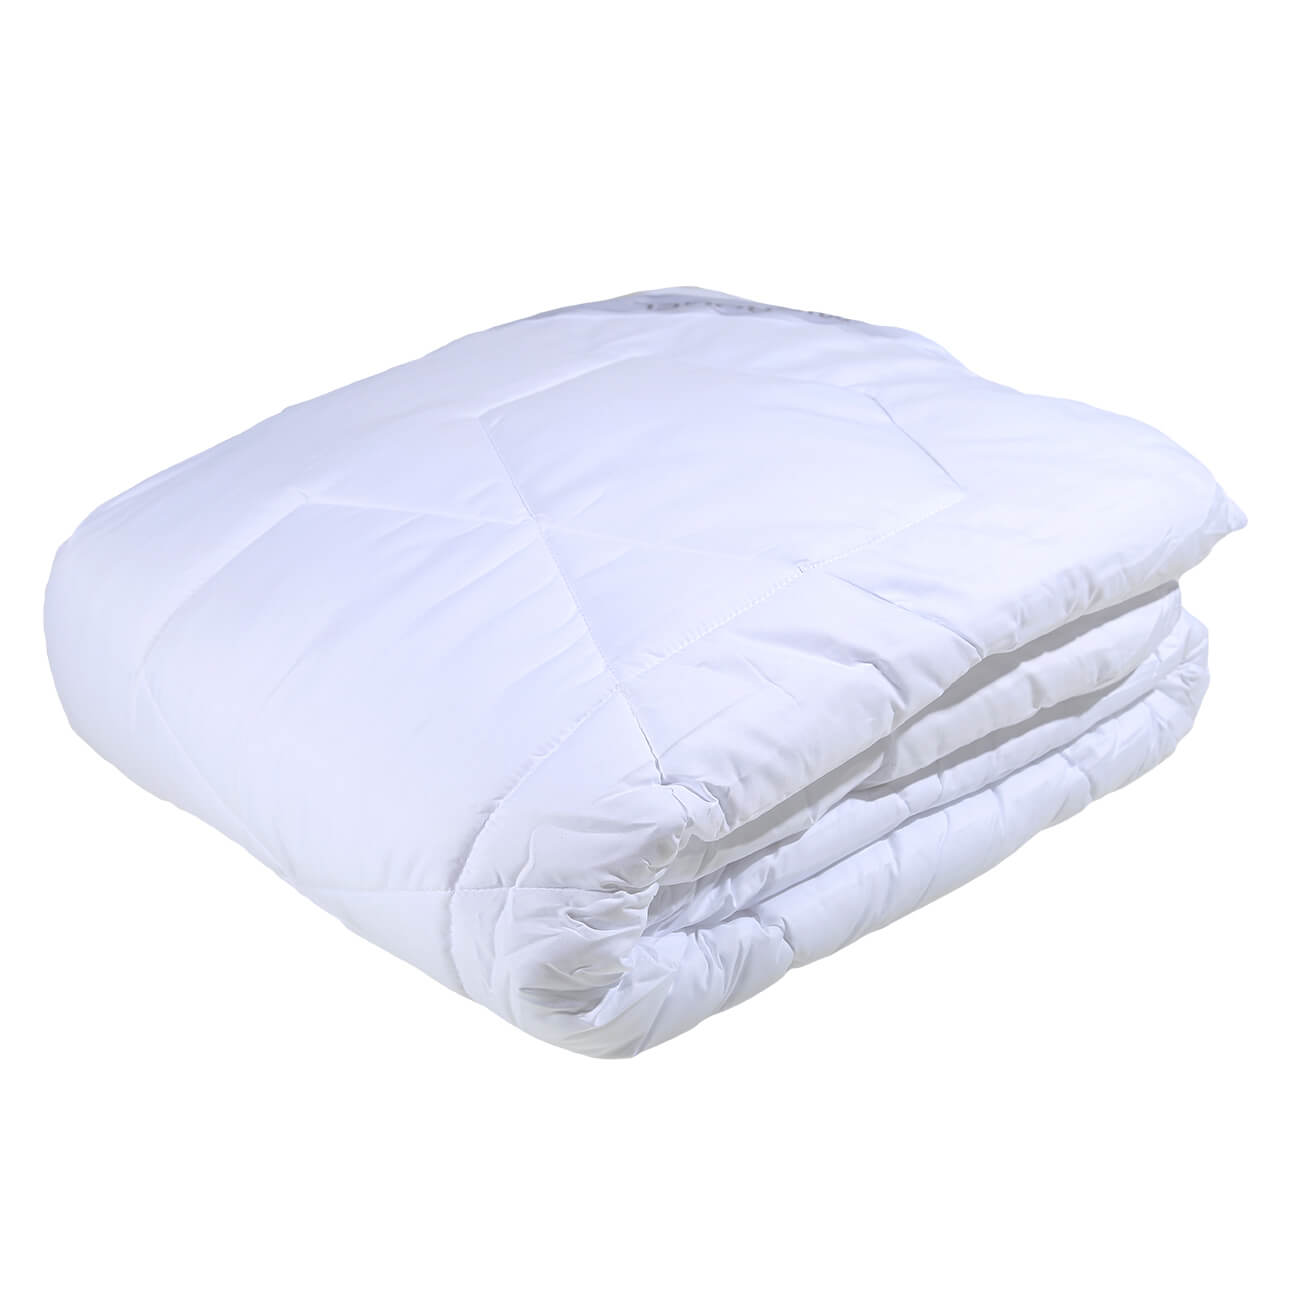 Одеяло, 200x220 cм, микрофибра/микрогель, Microgel